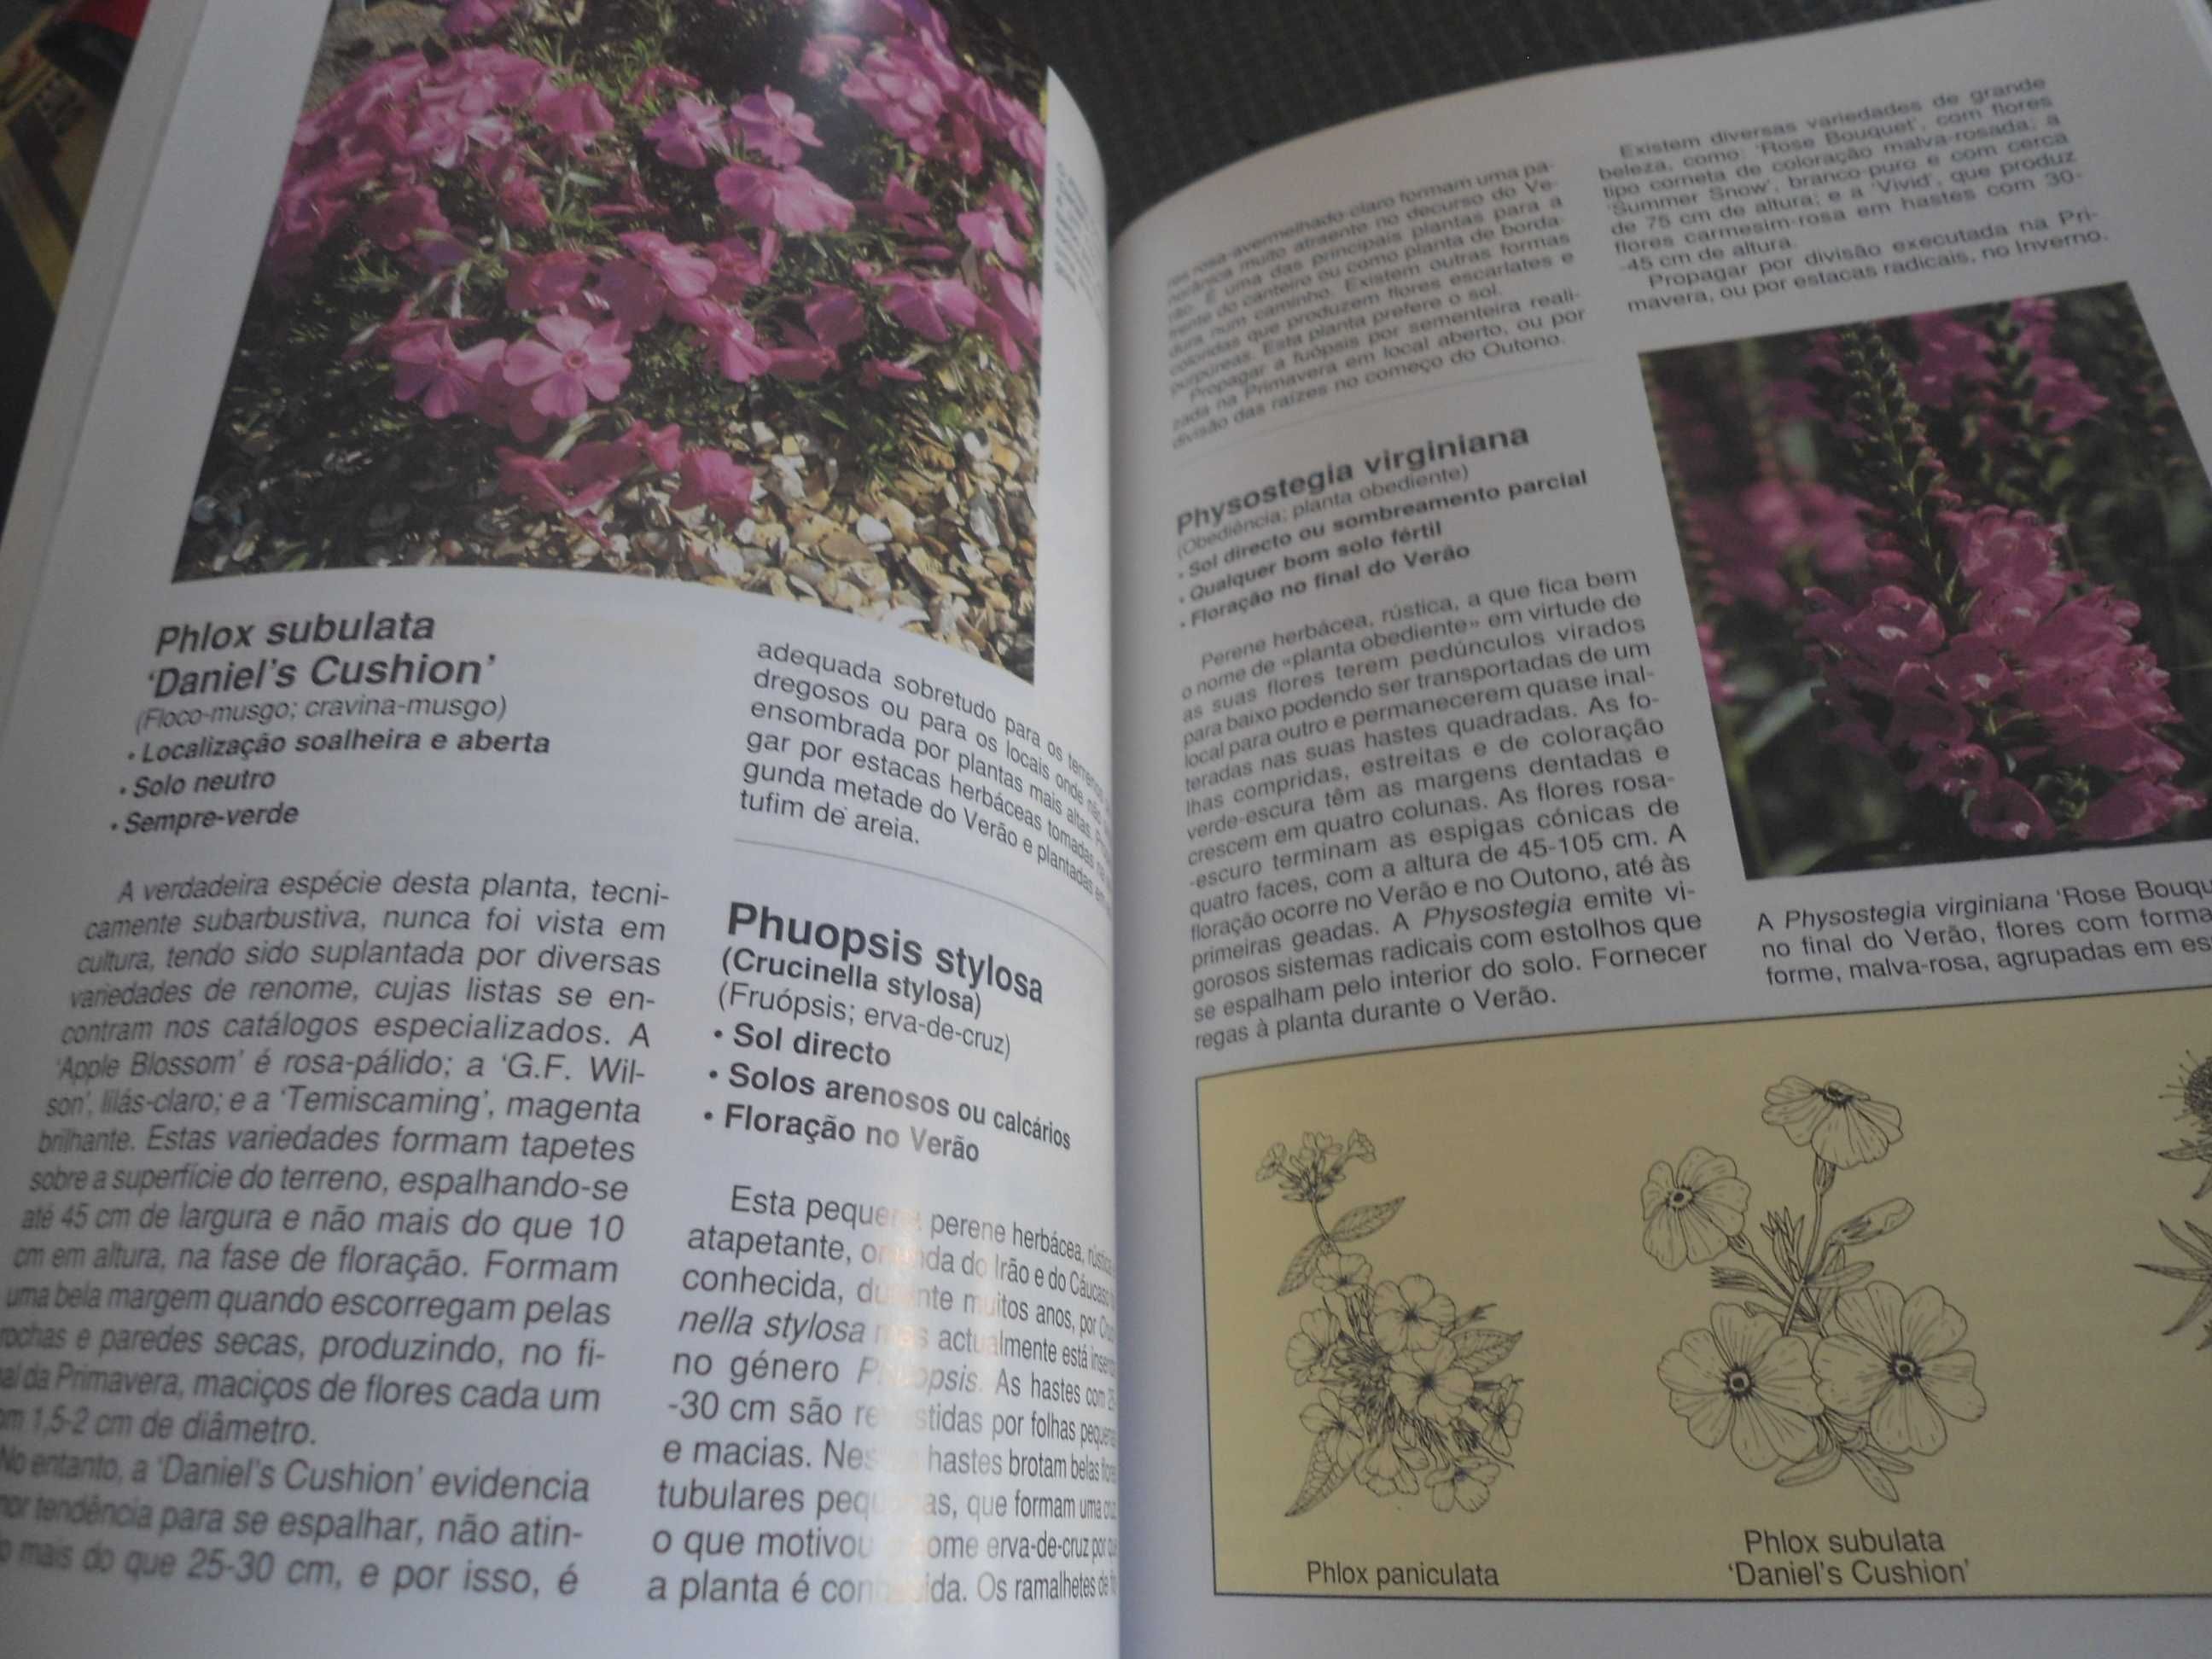 Plantas de Jardim por David Squire (2 volumes)